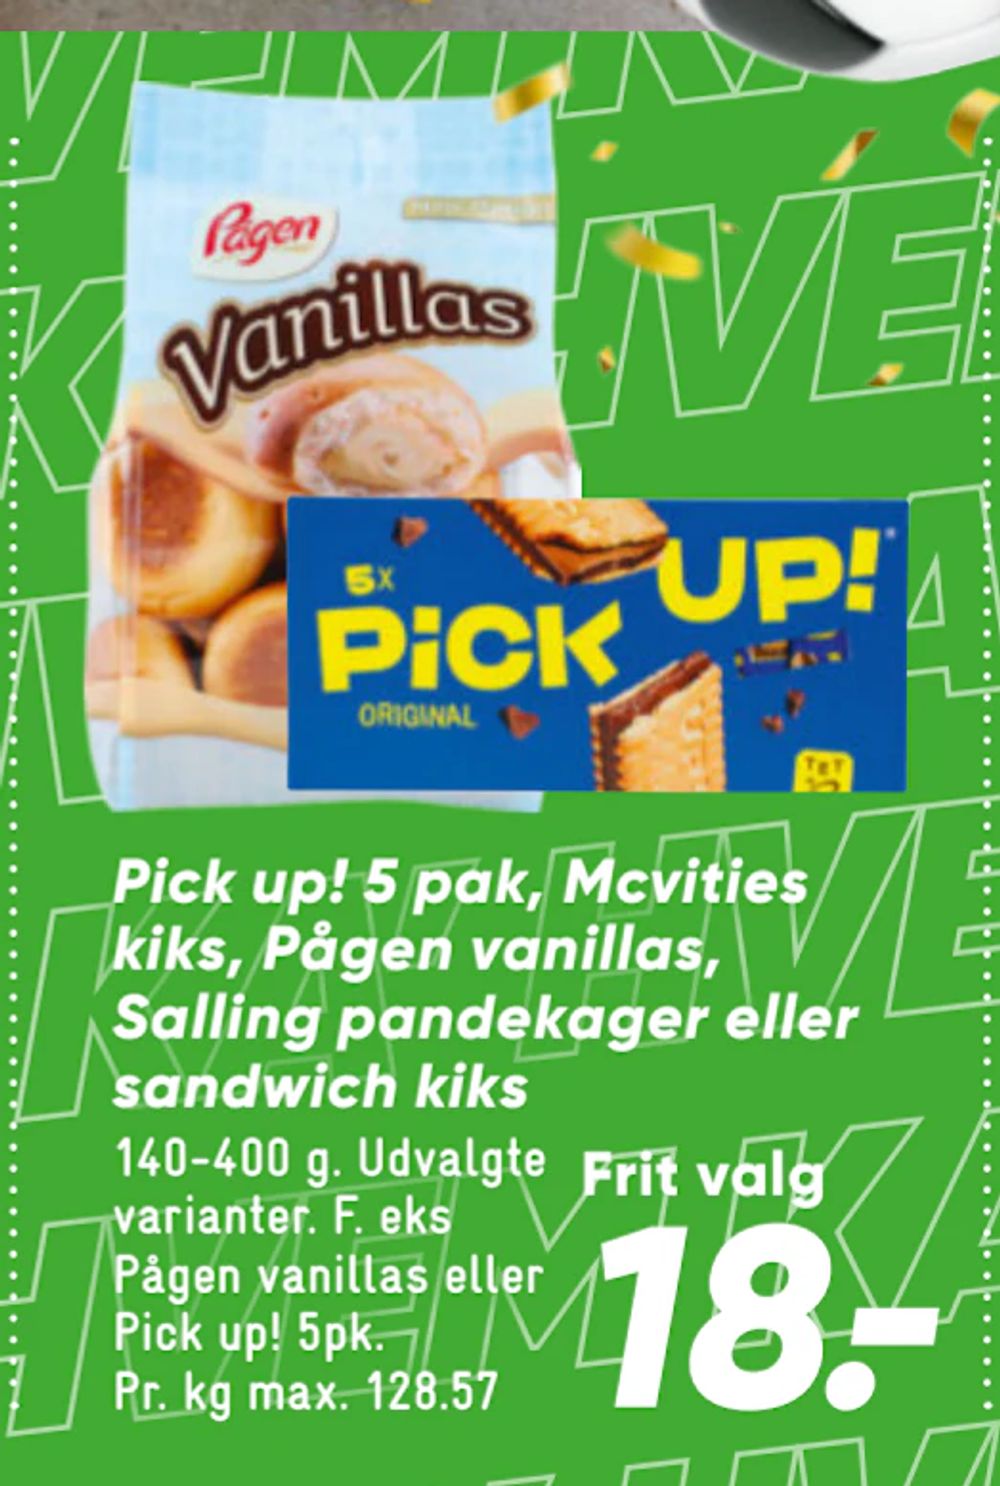 Tilbud på Pick up! 5 pak, Mcvities kiks, Pågen vanillas, Salling pandekager eller sandwich kiks fra Bilka til 18 kr.